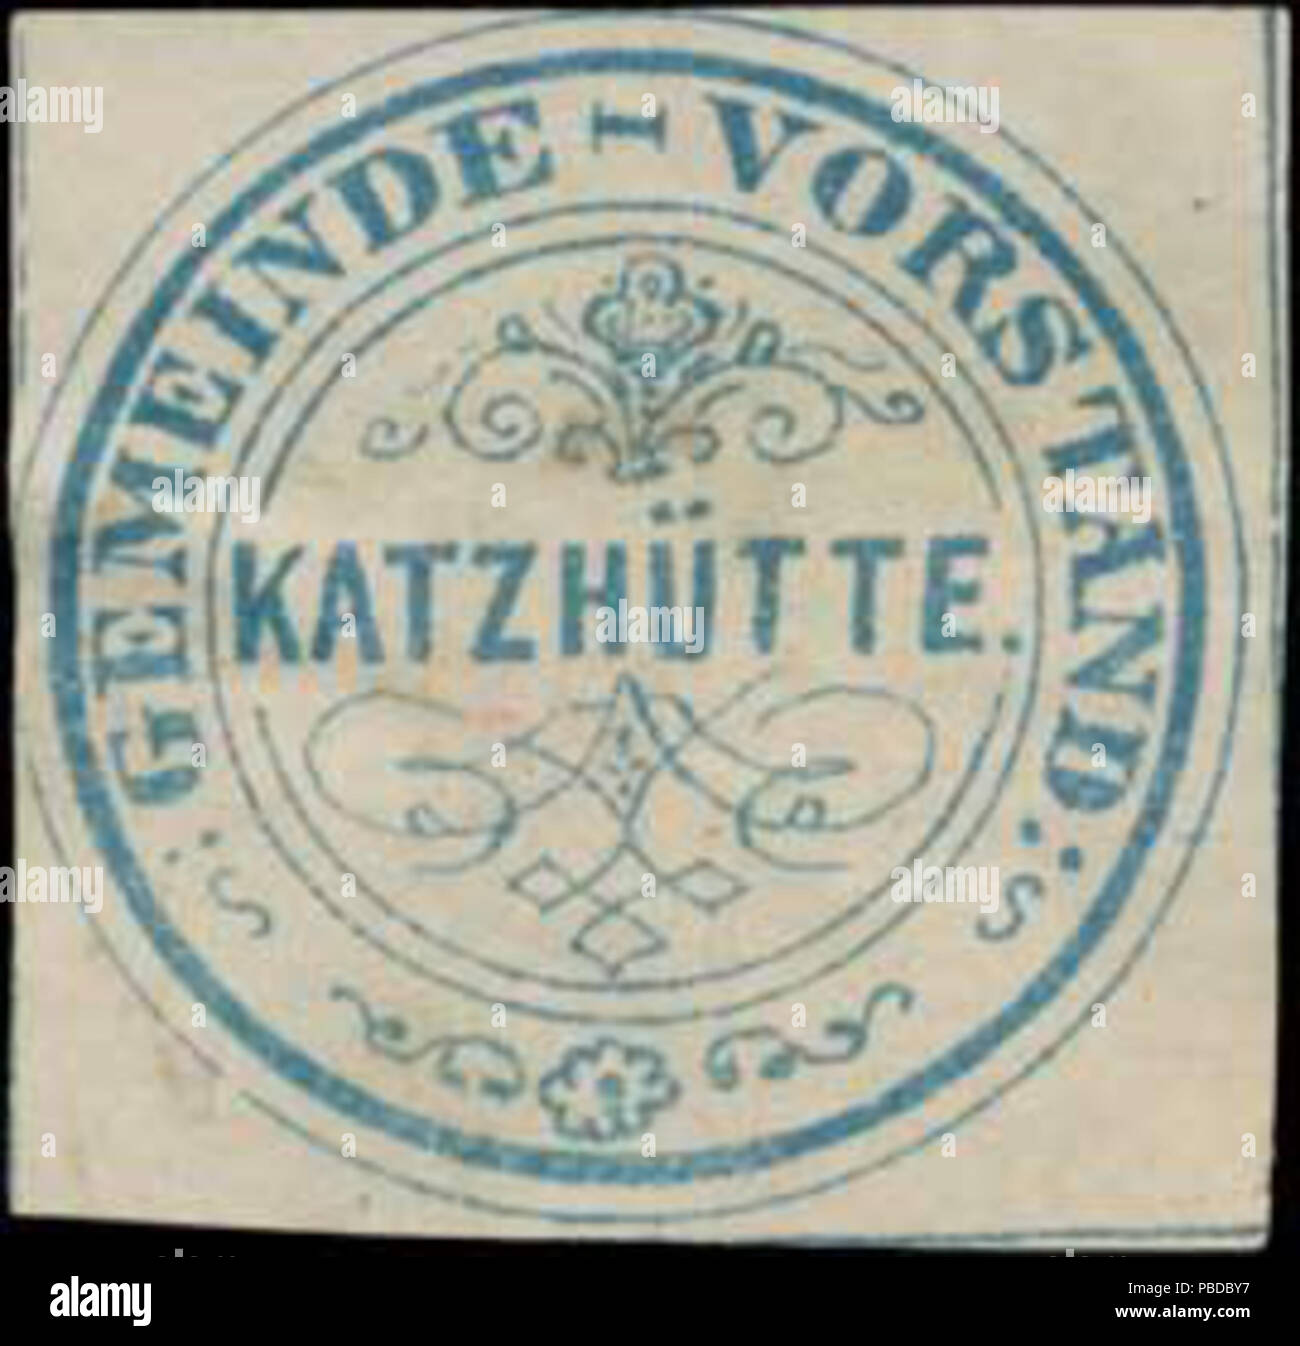 Alte Briefverschlussmarke aus Papier, welche seit ca. 1850 von Behoerden, Anwaelten, Notaren und Firmen zum verschliessen der Post verwendet wurde. 1383 Siegelmarke Gemeinde-Vorstand Katzhütte W0392619 Stock Photo